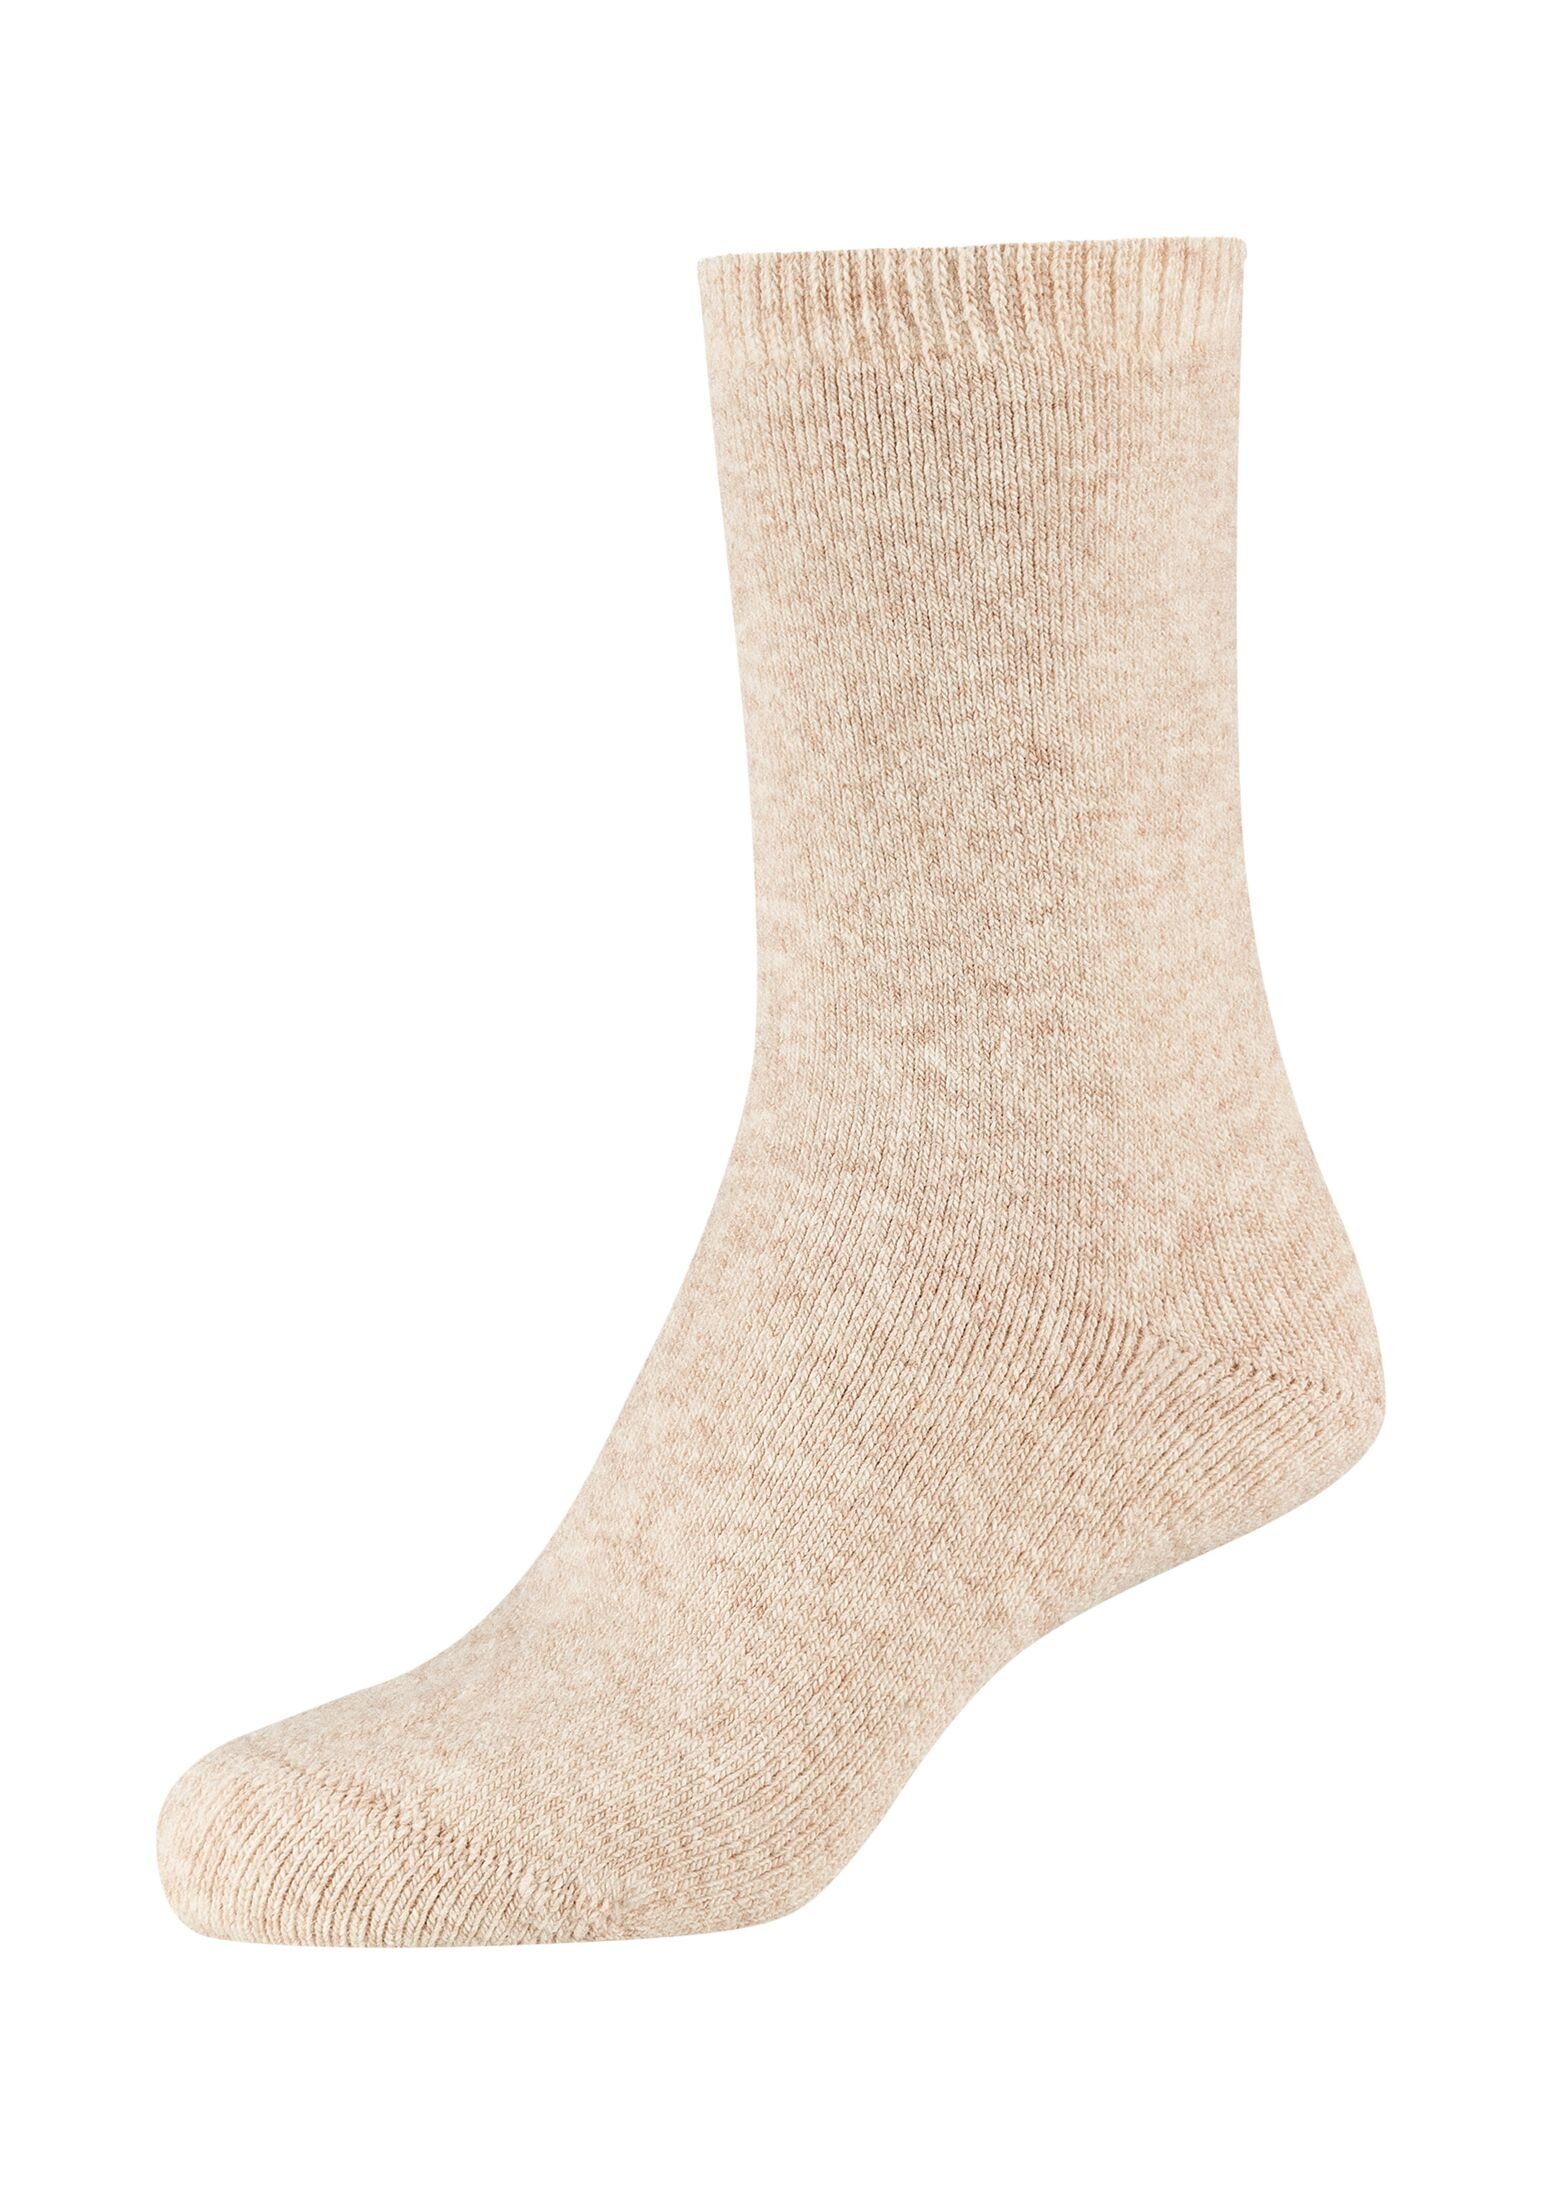 Camano Socken Socken 2er Pack, Gemütlich und warm - die perfekte Bettsocken